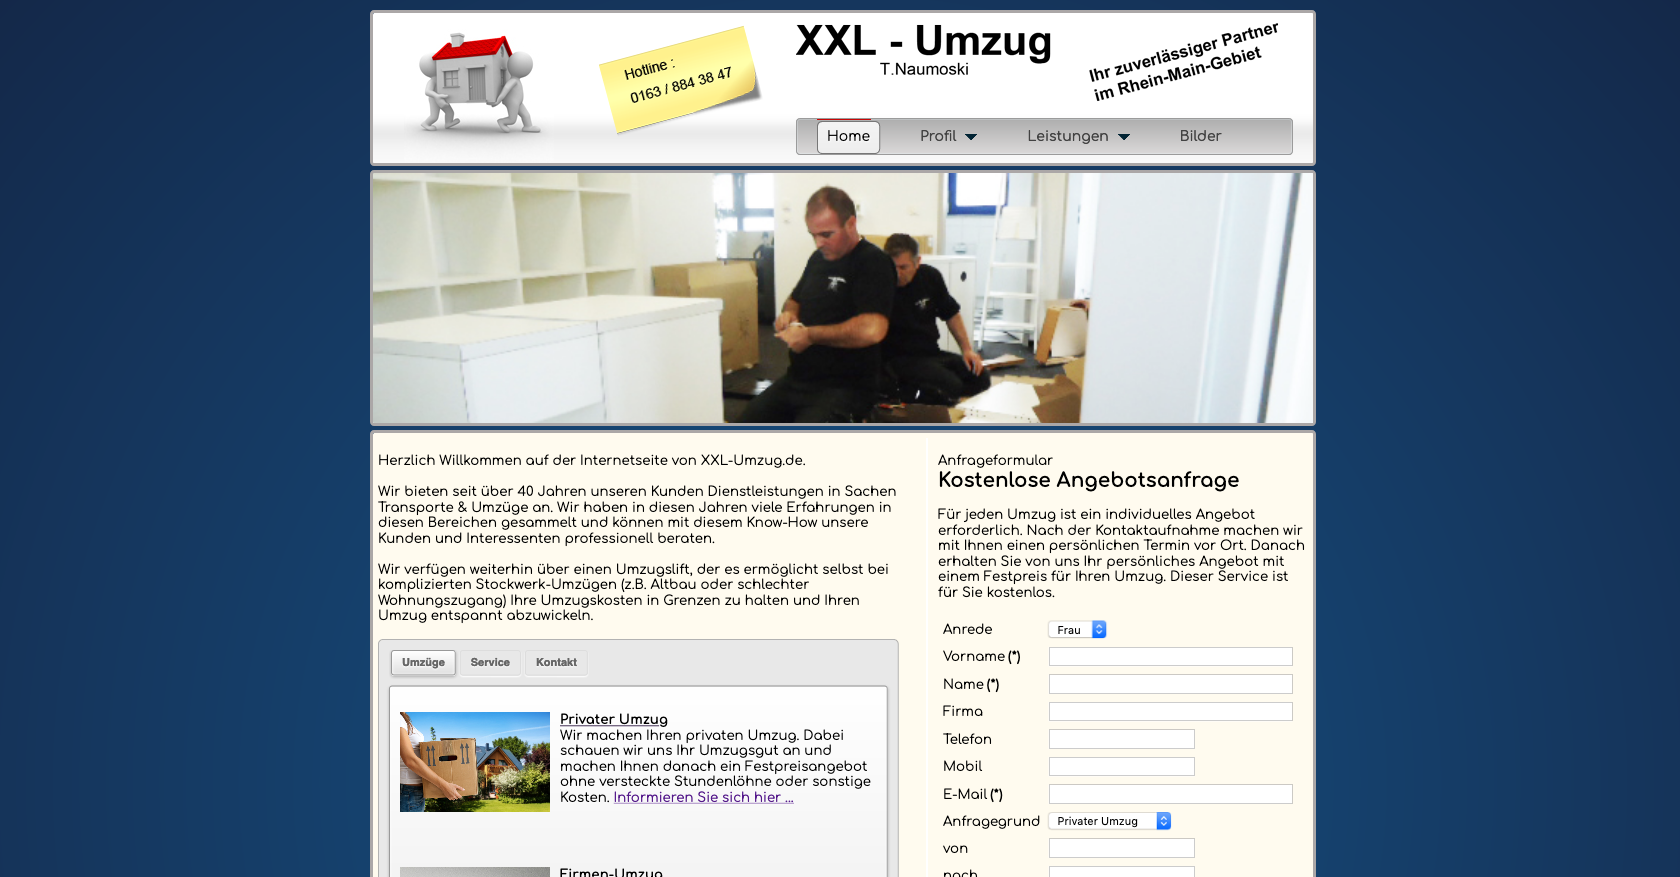 XXL – Umzug <br>www.xxl-umzug.de